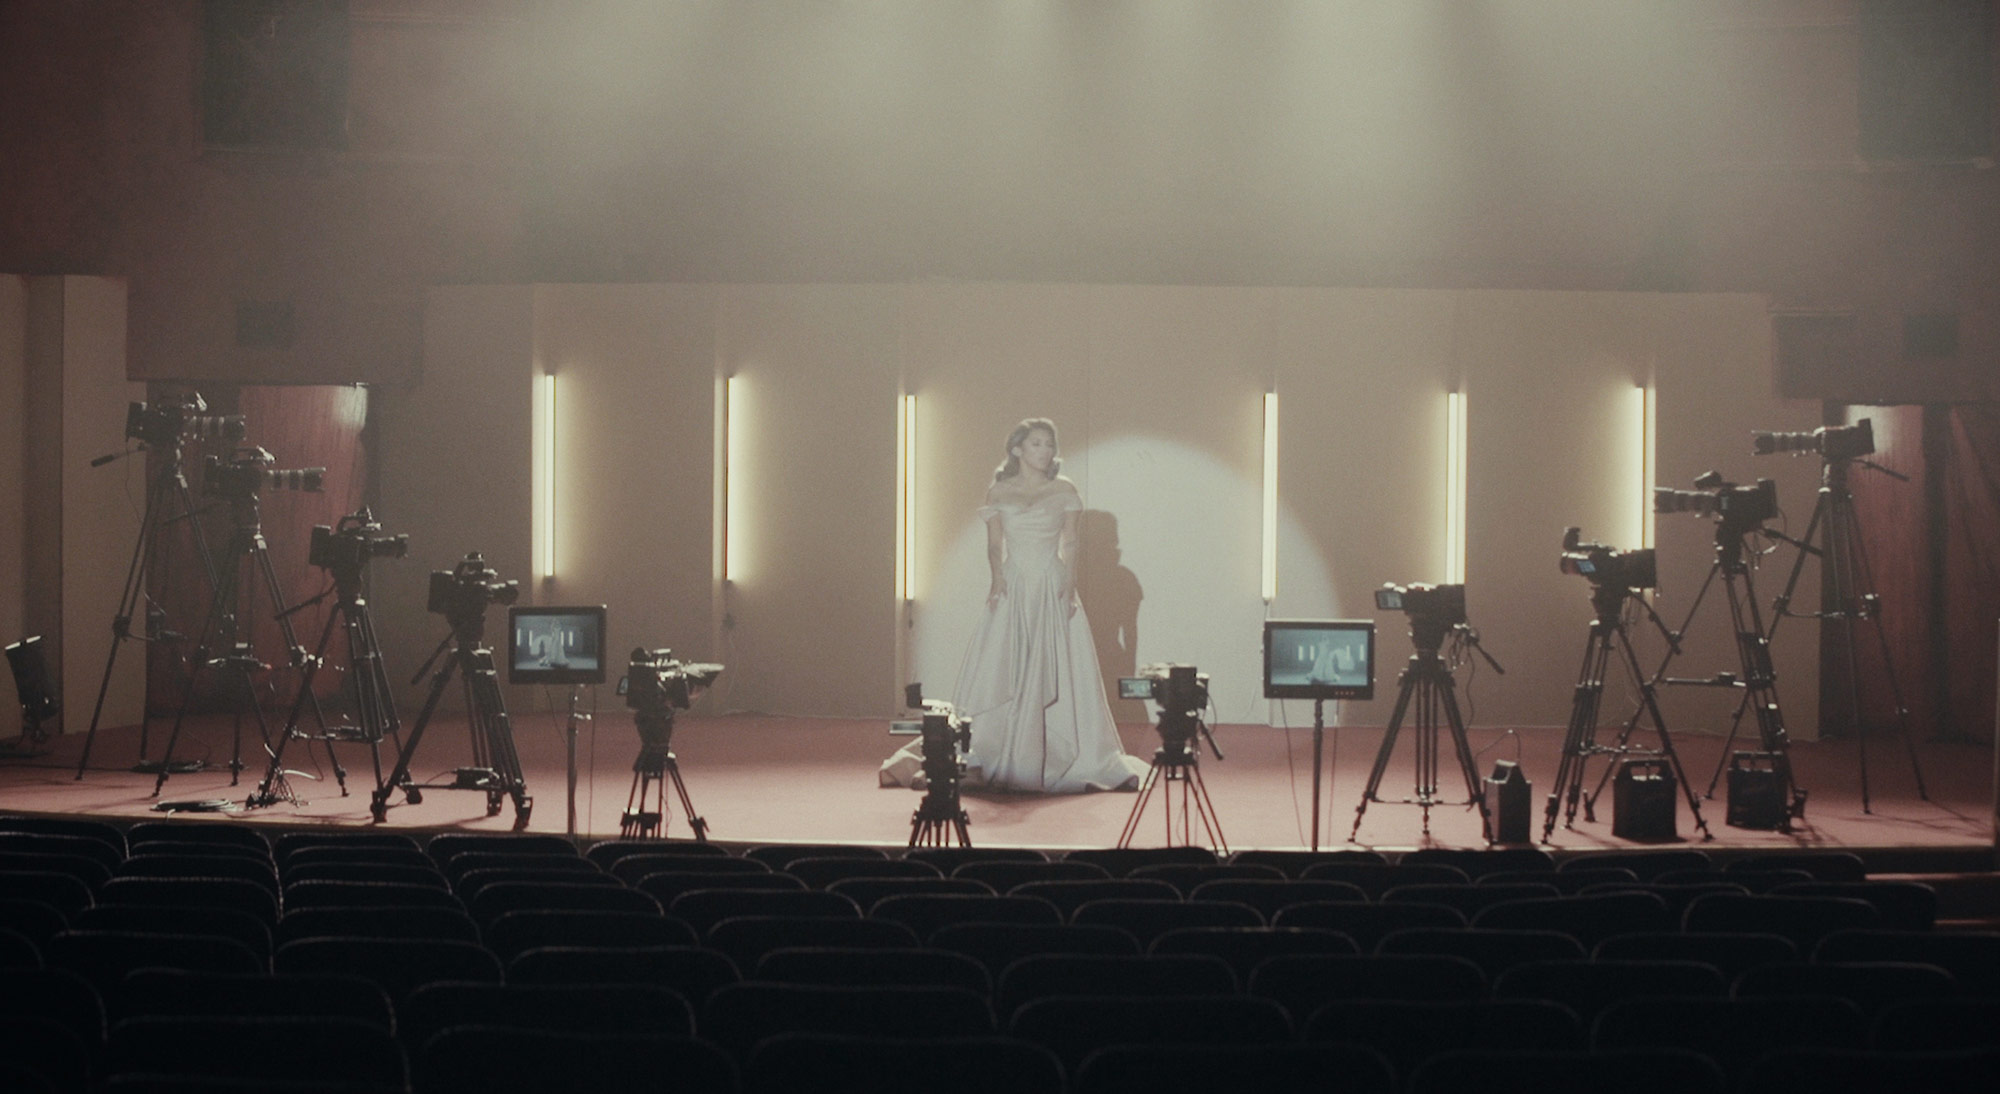 格莱美获奖歌手Kirstin Maldonado新单曲《Naked》MV采用15台Blackmagic摄影机拍摄